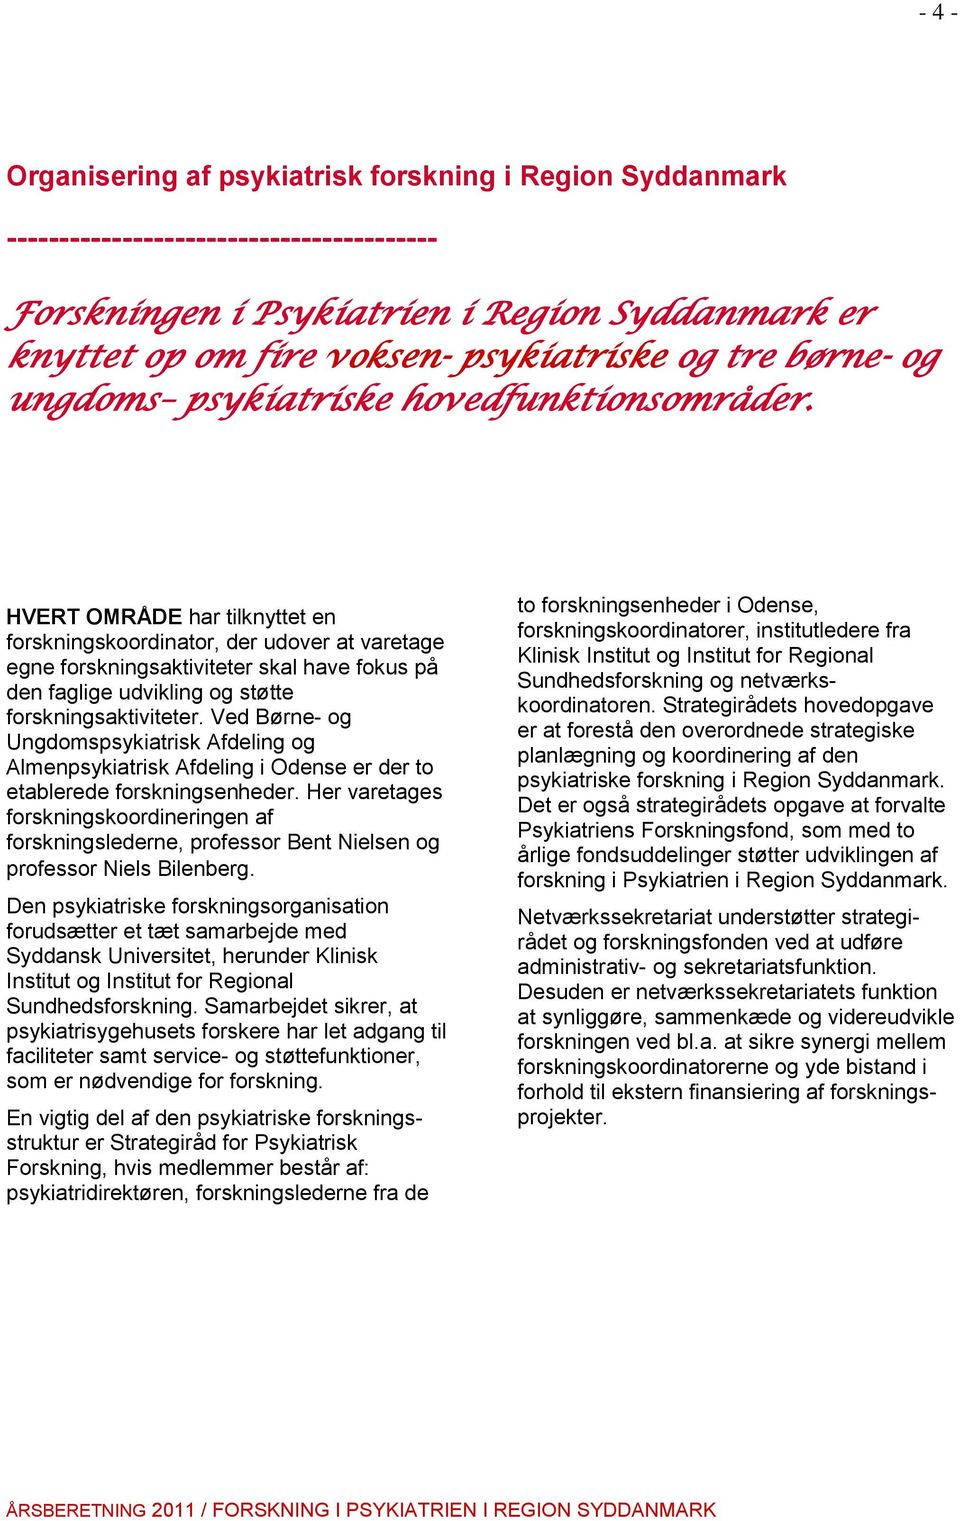 Ved Børne- og Ungdomspsykiatrisk Afdeling og Almenpsykiatrisk Afdeling i Odense er der to etablerede forskningsenheder.